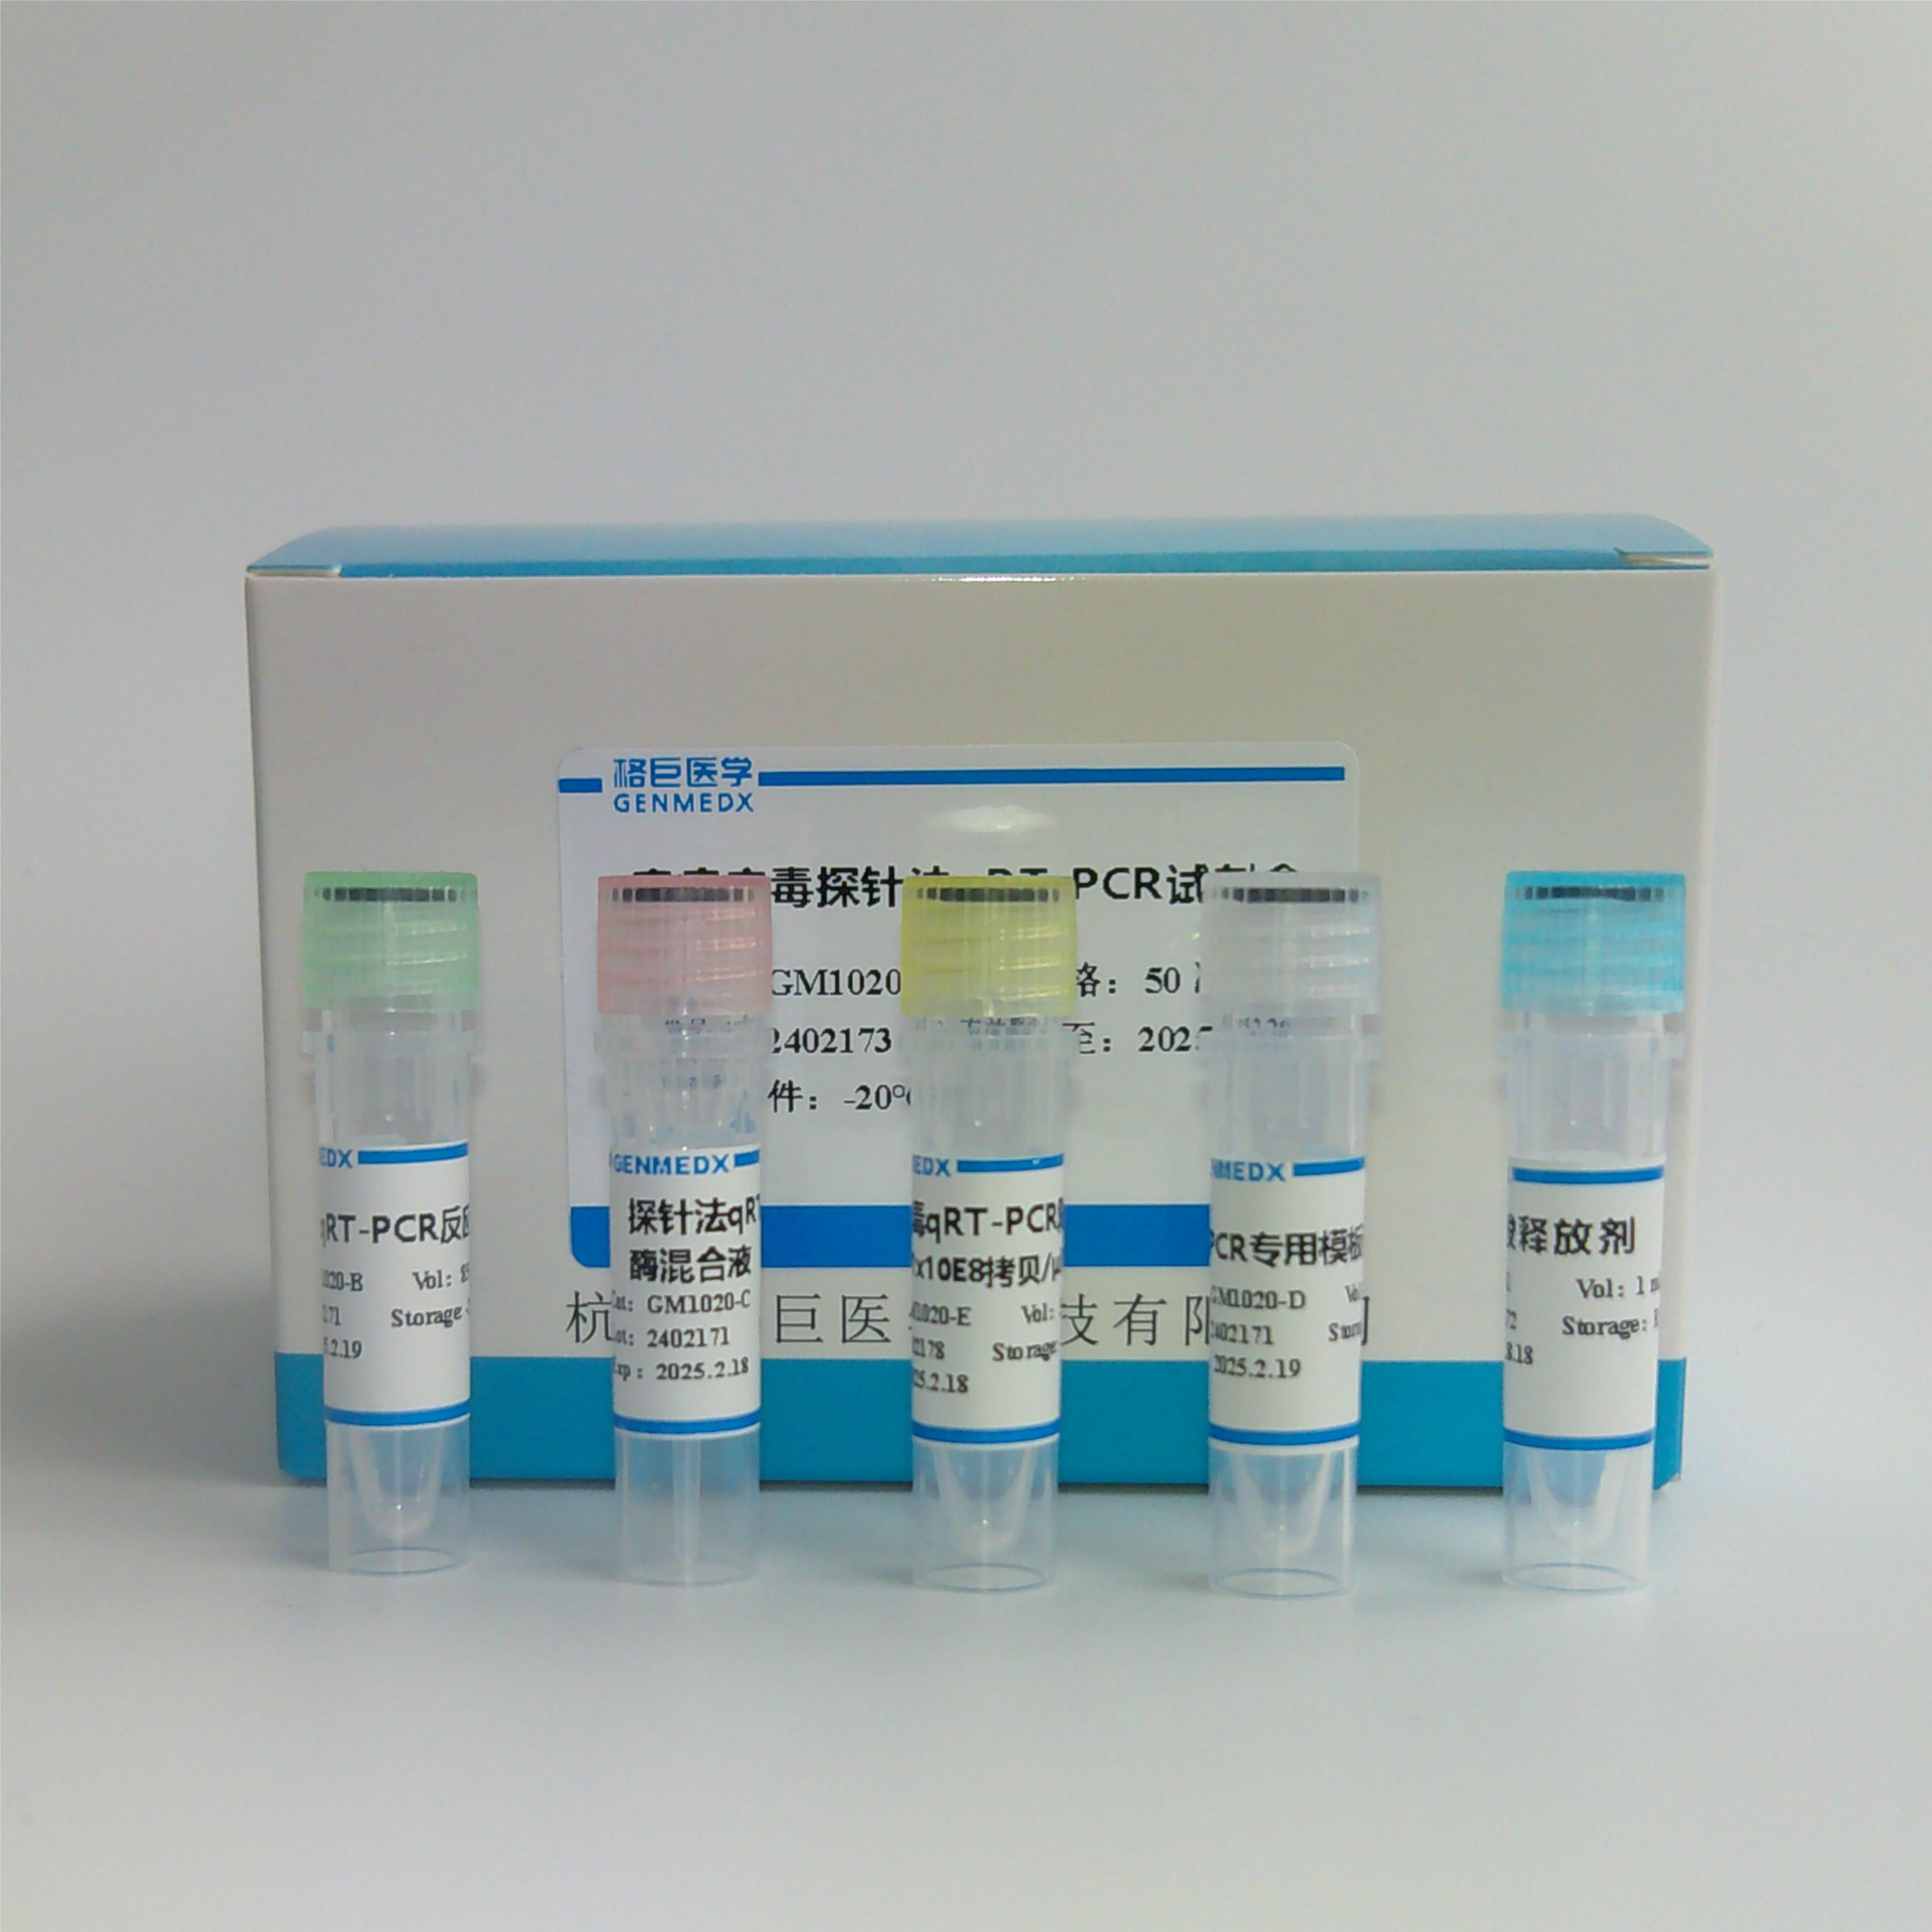 巨细胞病毒探针法荧光定量PCR试剂盒